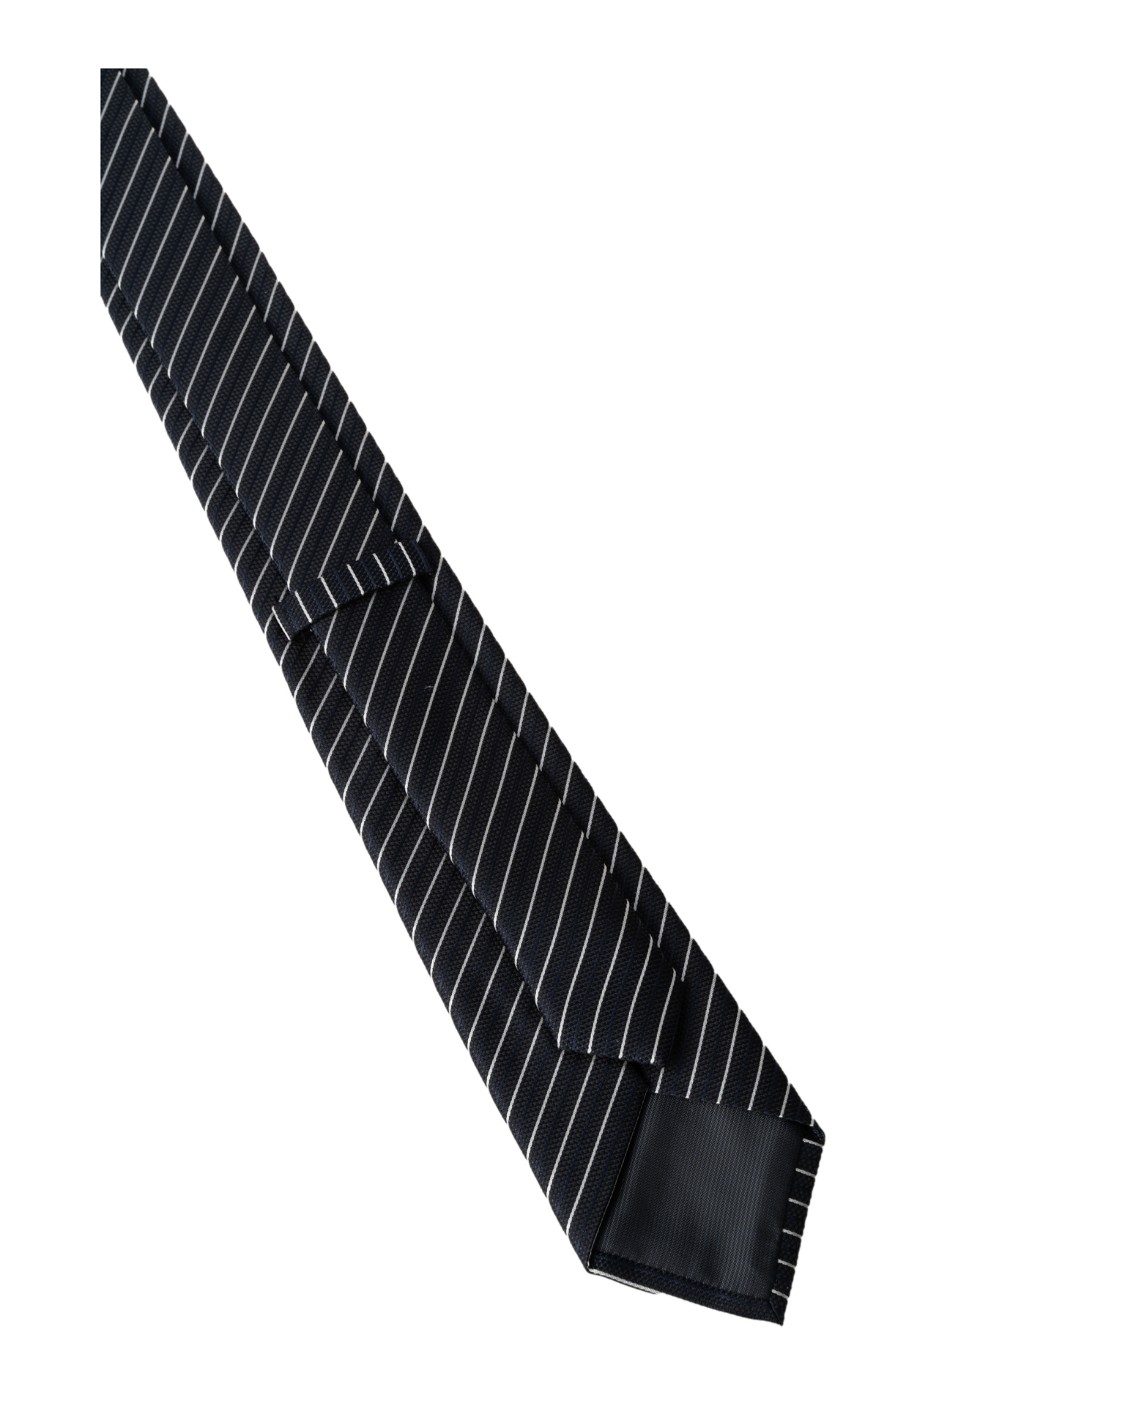 shop Z ZEGNA  Cravatta: Z Zegna cravatta in seta.
Modello con design a punta.
Larghezza pala 8cm.
Composizione: 62% seta 38% poliestere.
Made in Italy.. Z6C60 1S7 A-024 number 4429034